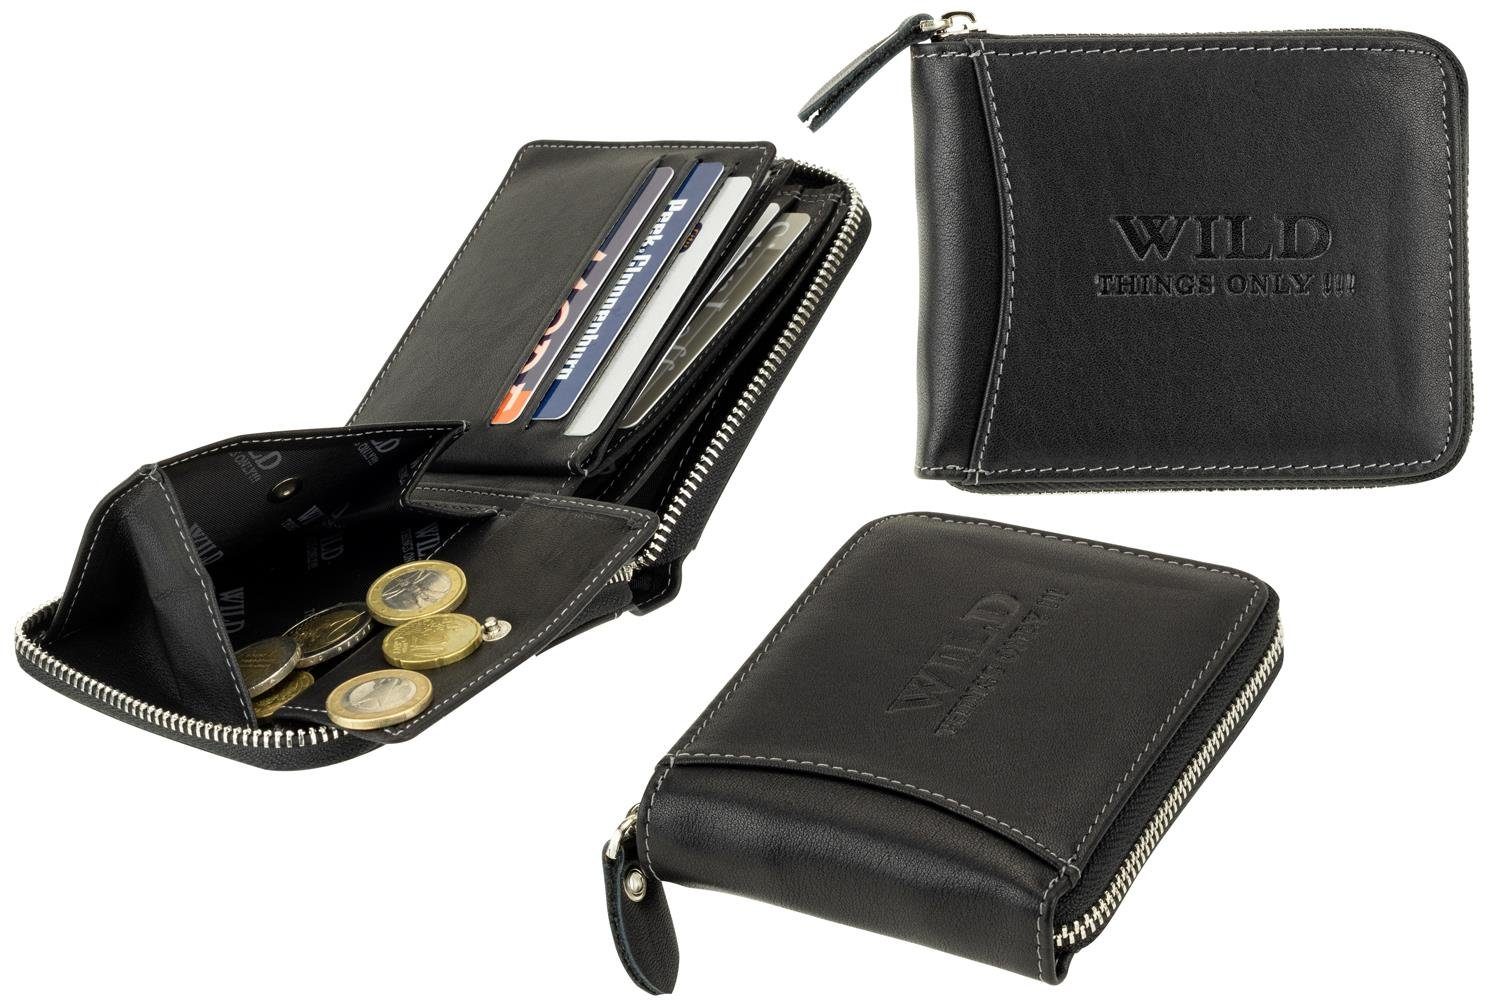 Wild Things Only !!! Geldbörse aus Leder mit rundum Reißverschluss, RFID-Schutz, umlaufender Metallreißverschluß